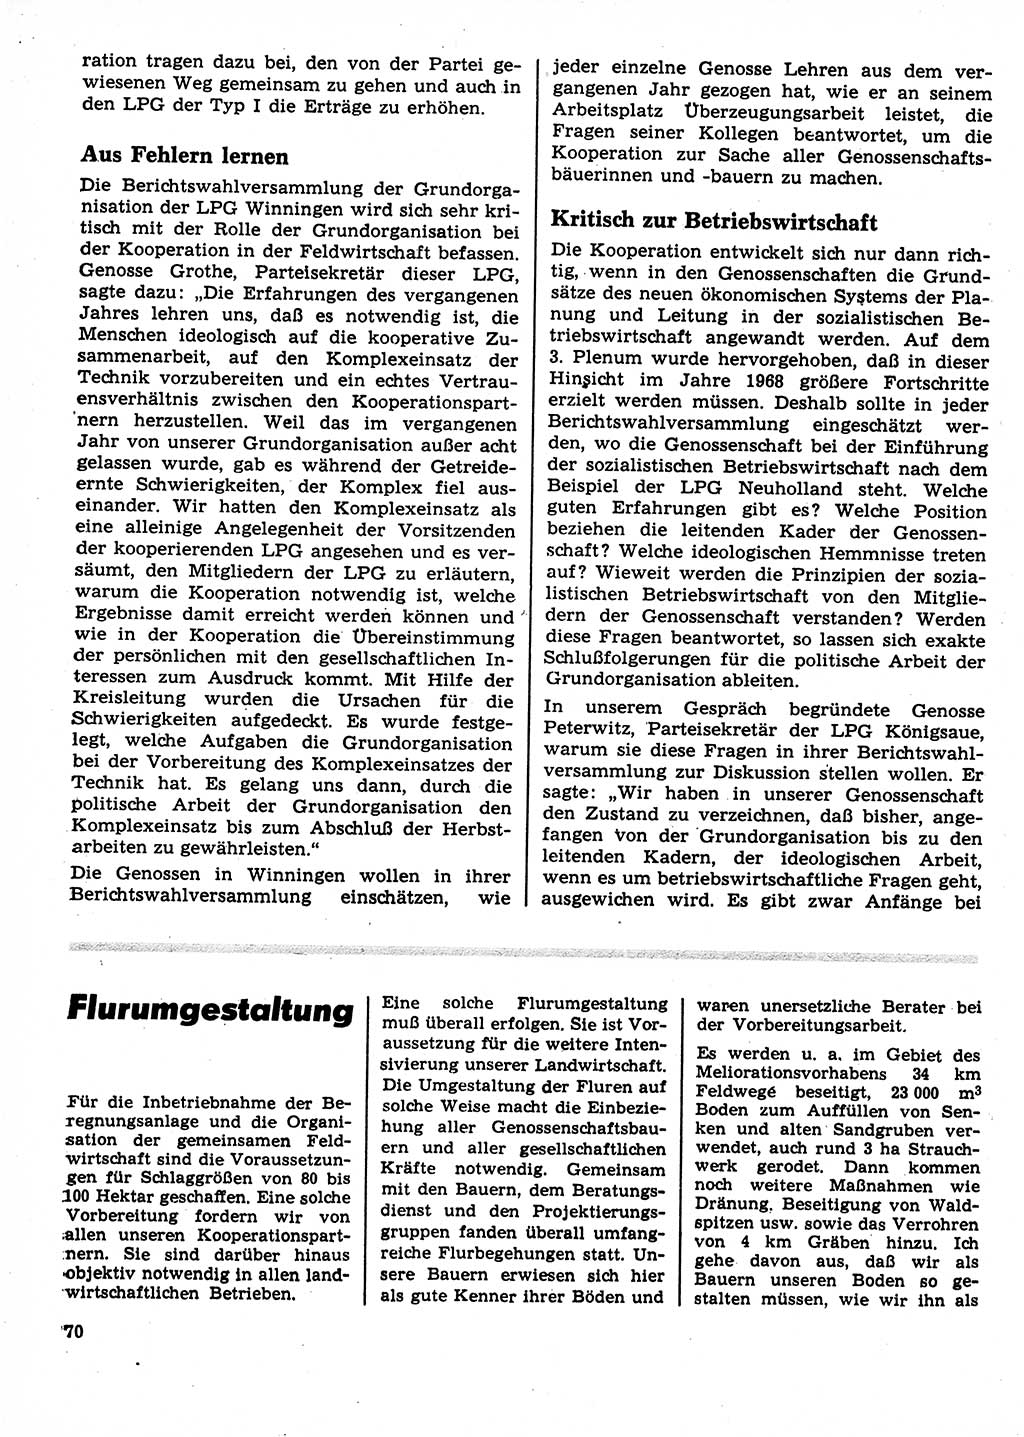 Neuer Weg (NW), Organ des Zentralkomitees (ZK) der SED (Sozialistische Einheitspartei Deutschlands) für Fragen des Parteilebens, 23. Jahrgang [Deutsche Demokratische Republik (DDR)] 1968, Seite 70 (NW ZK SED DDR 1968, S. 70)